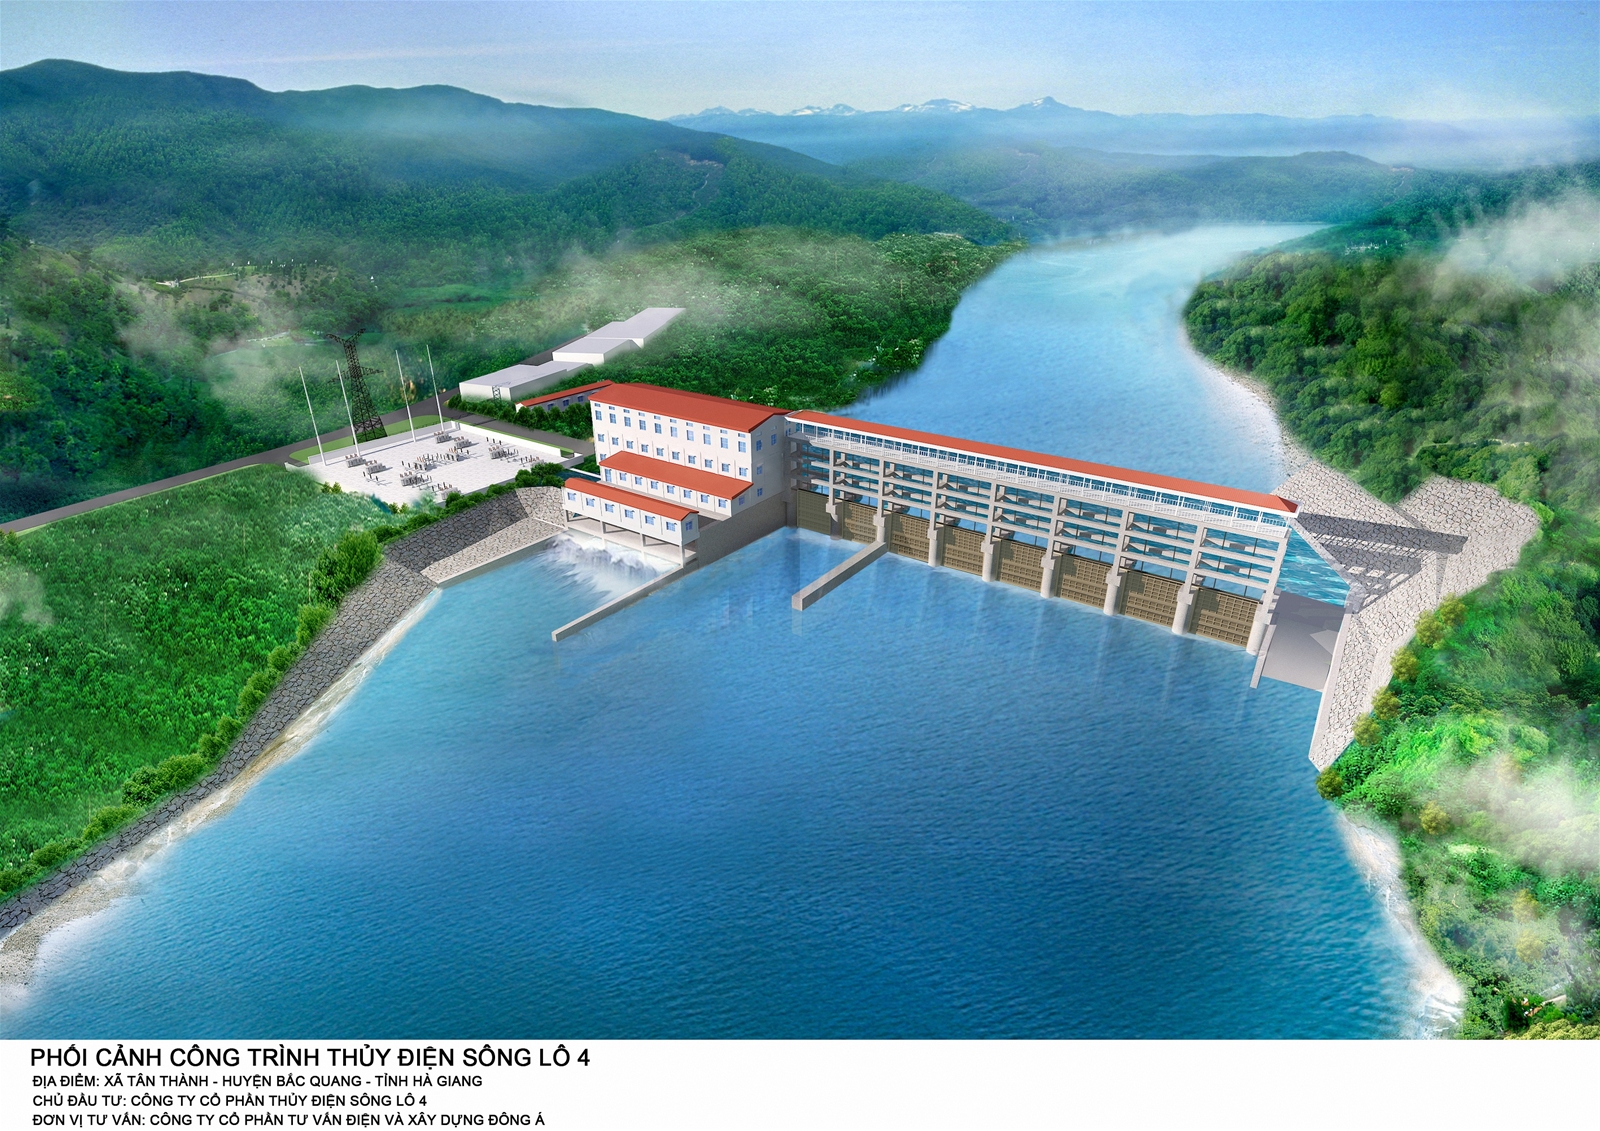 Tuyển dụng Giám đốc nhà máy thủy điện Sông Lô 4 - Hà Giang.